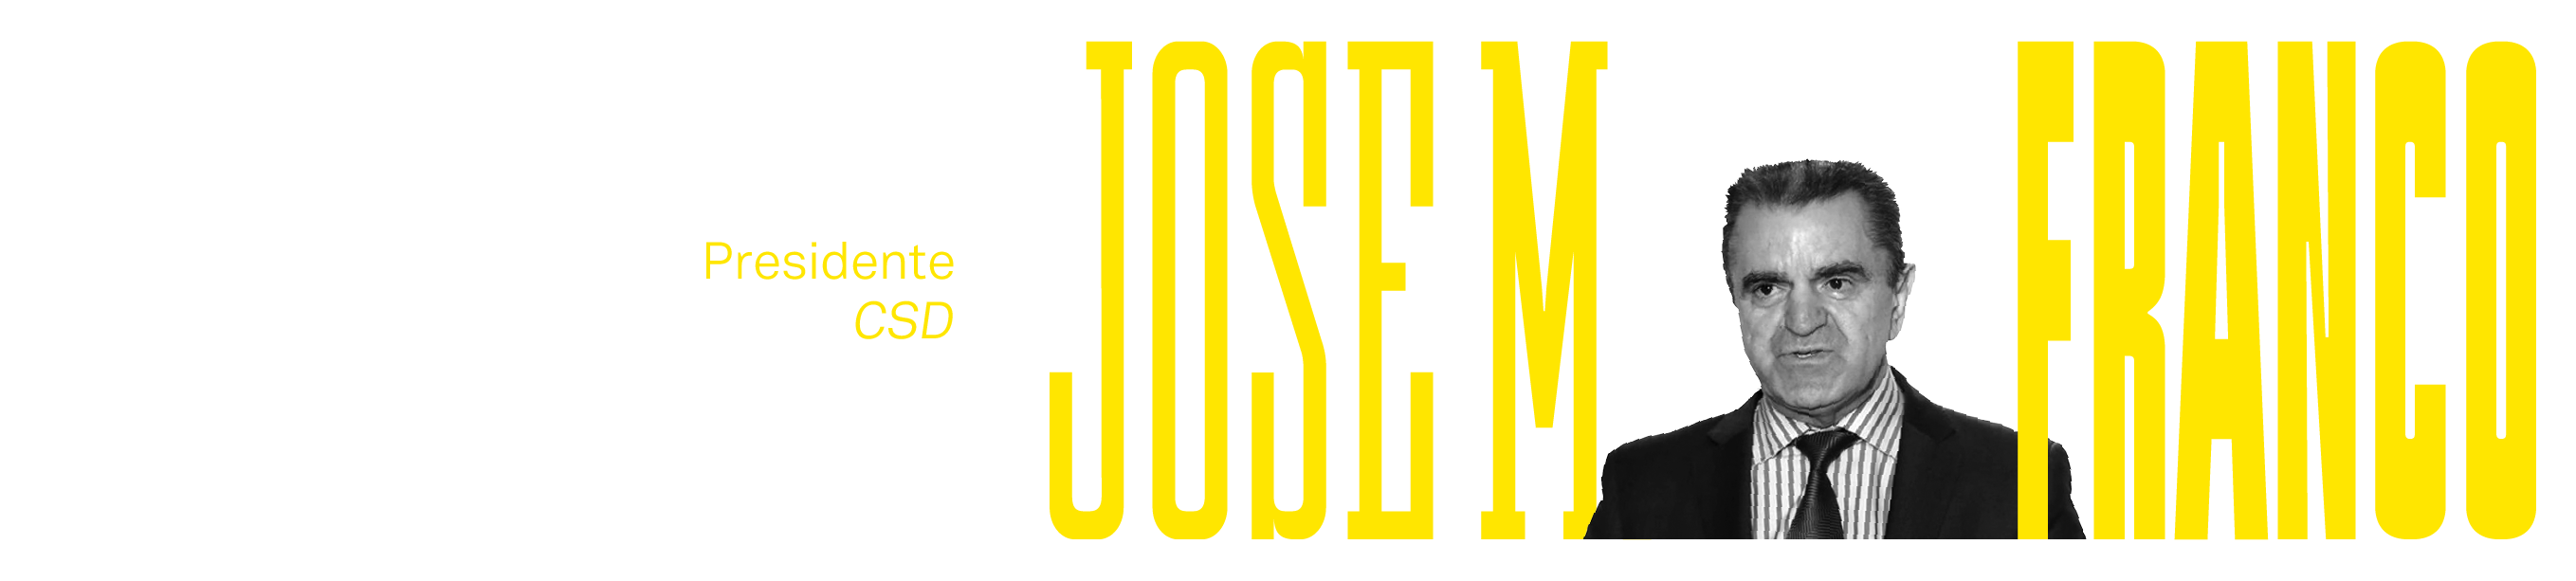 A – D1 – 01 Jose Manuel Franco